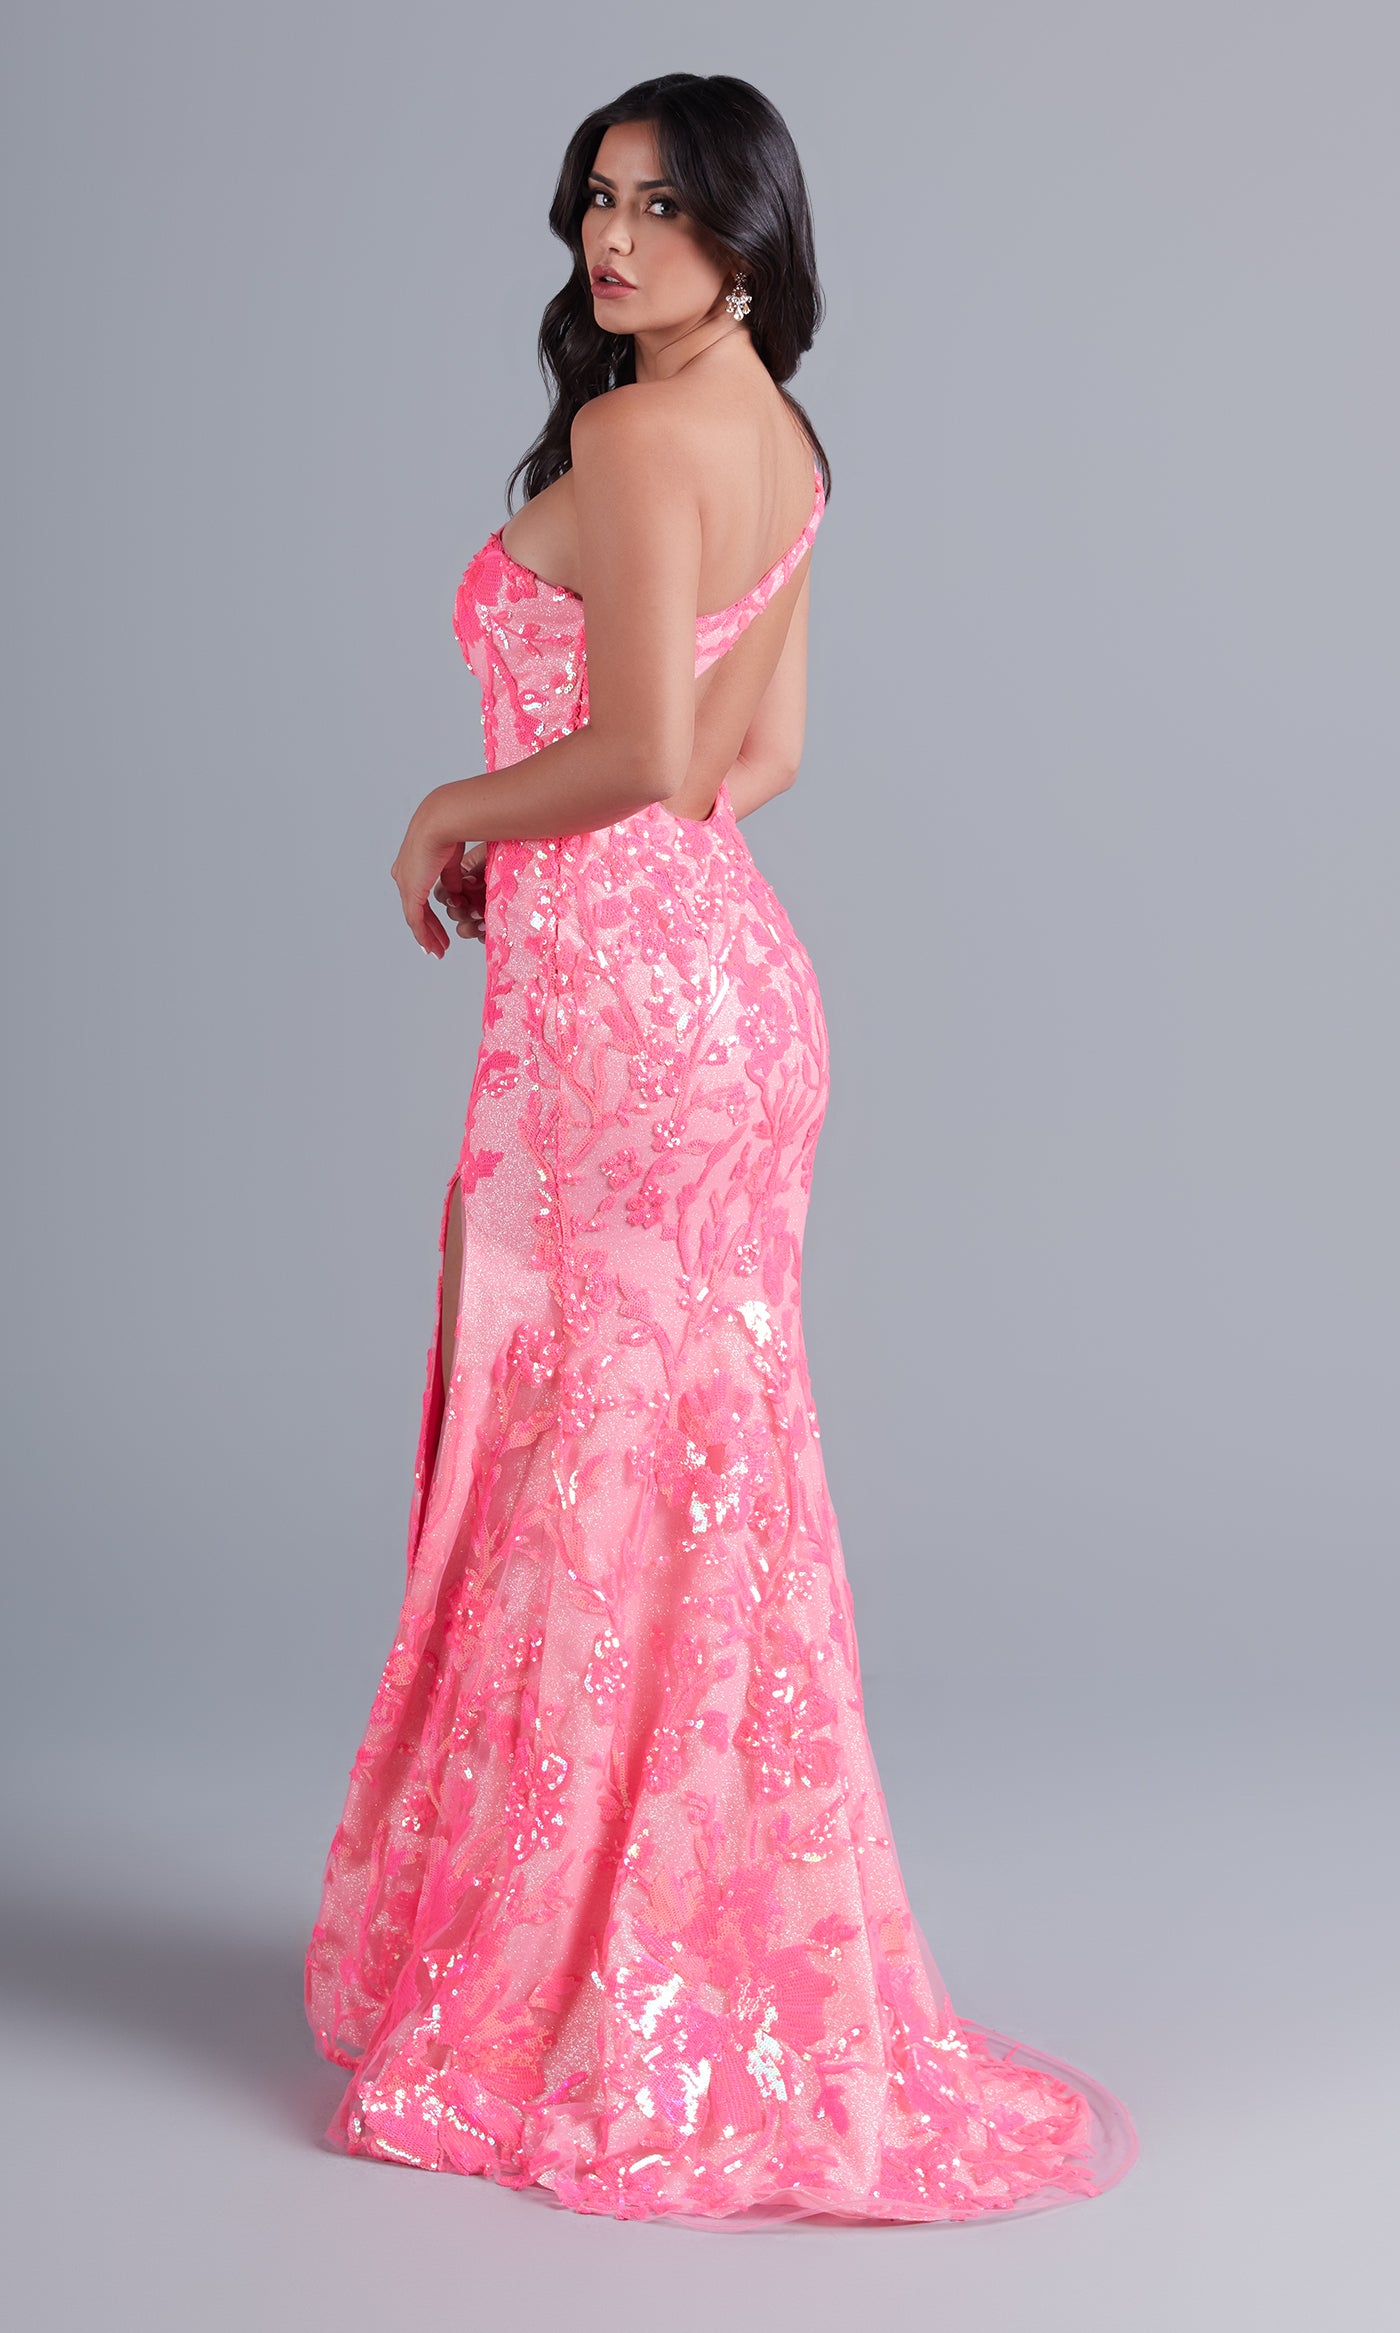  One-Shoulder-Sash Long Neon Designer Prom Dress